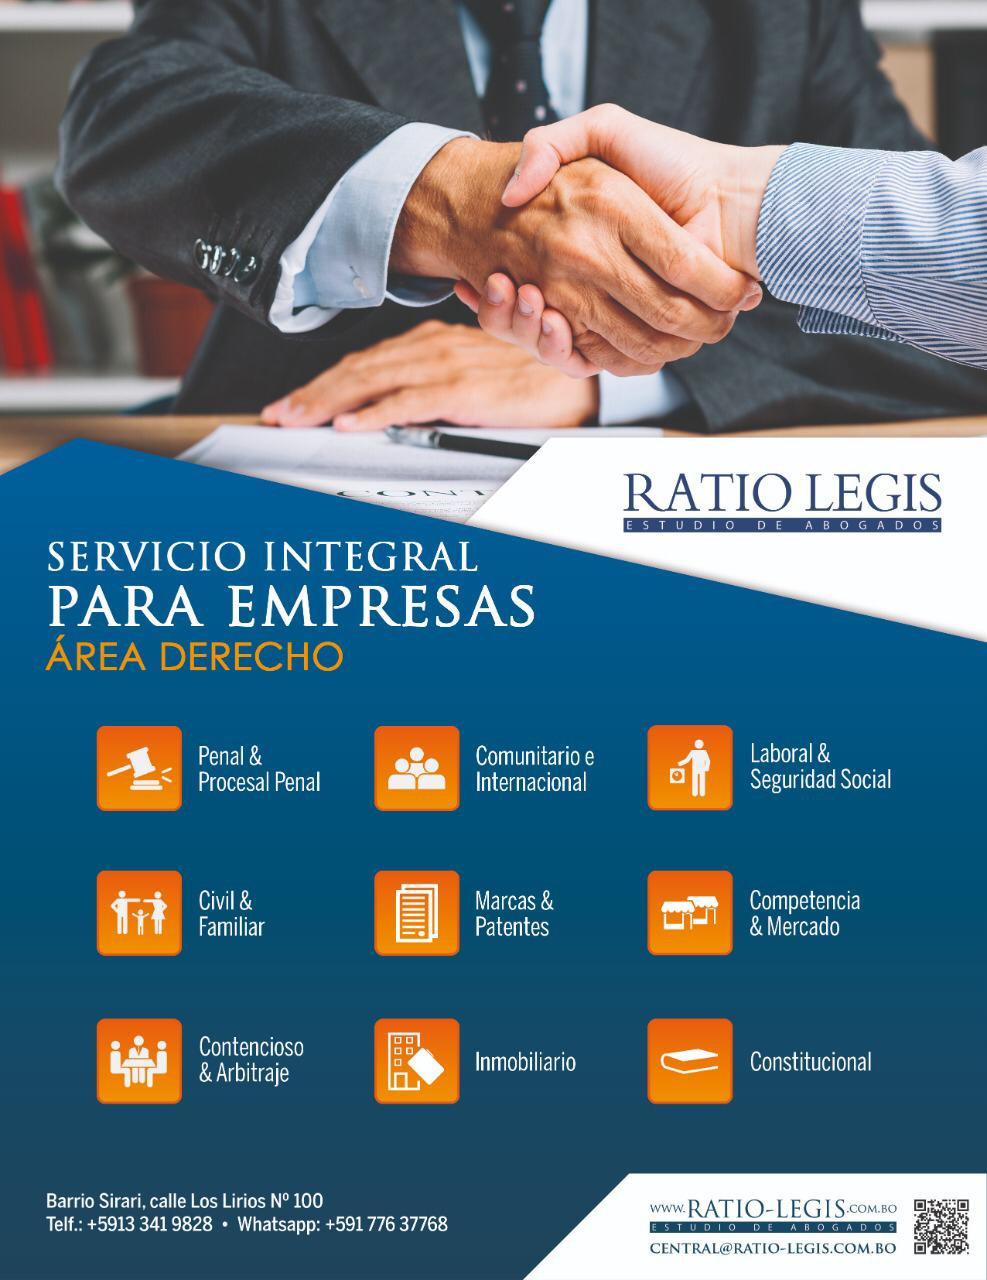 (Español) Servicio Integral para Empresas Área Derecho